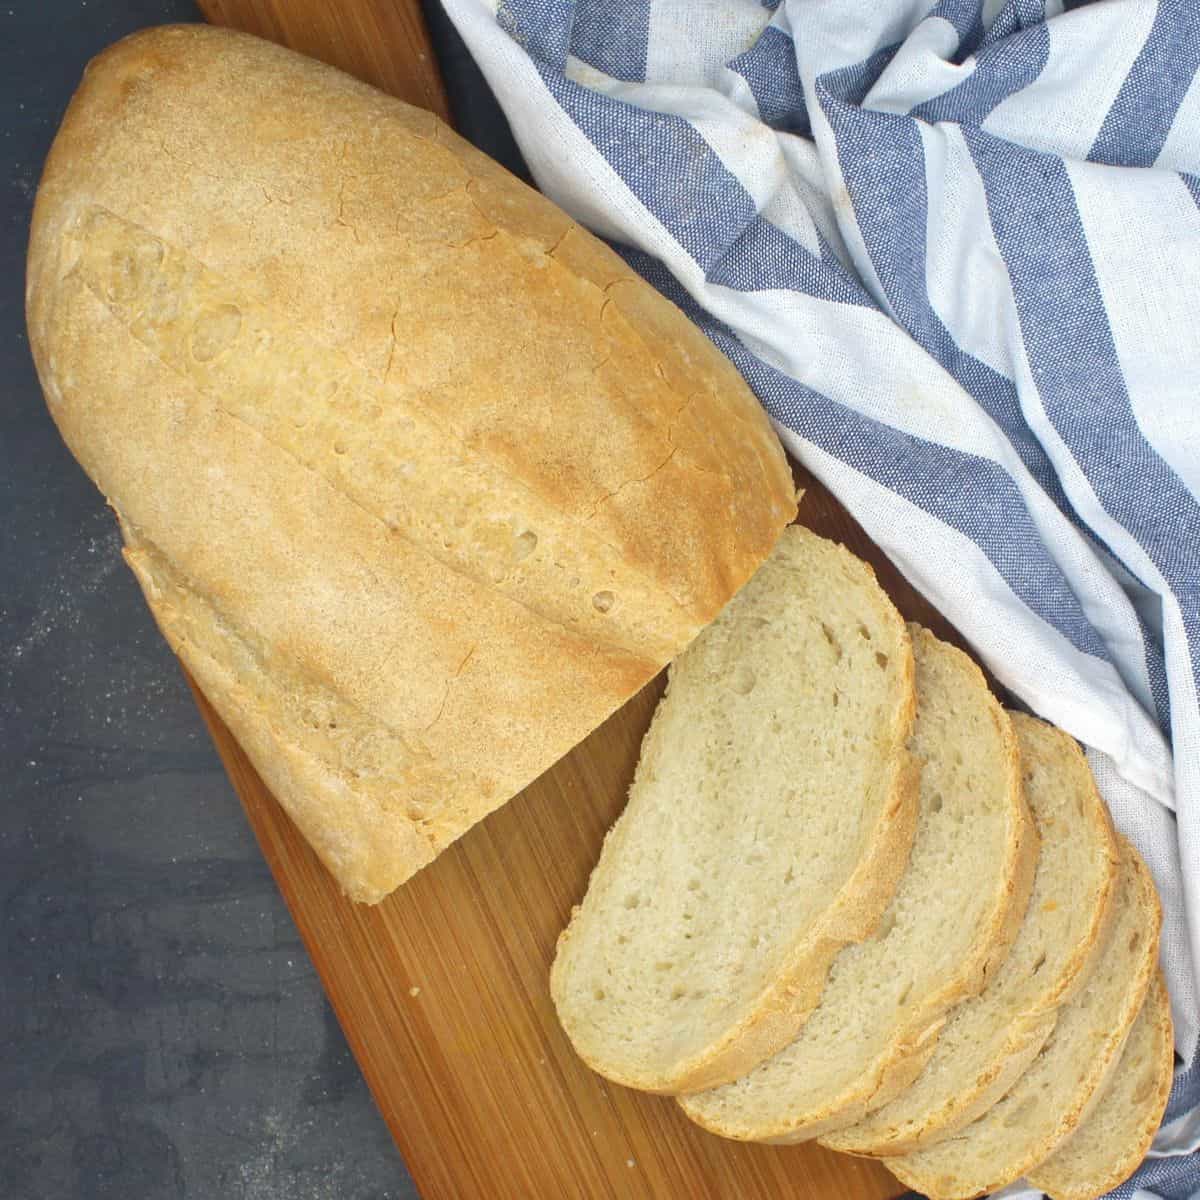 Sliced Italian bread loaf on wooden board.